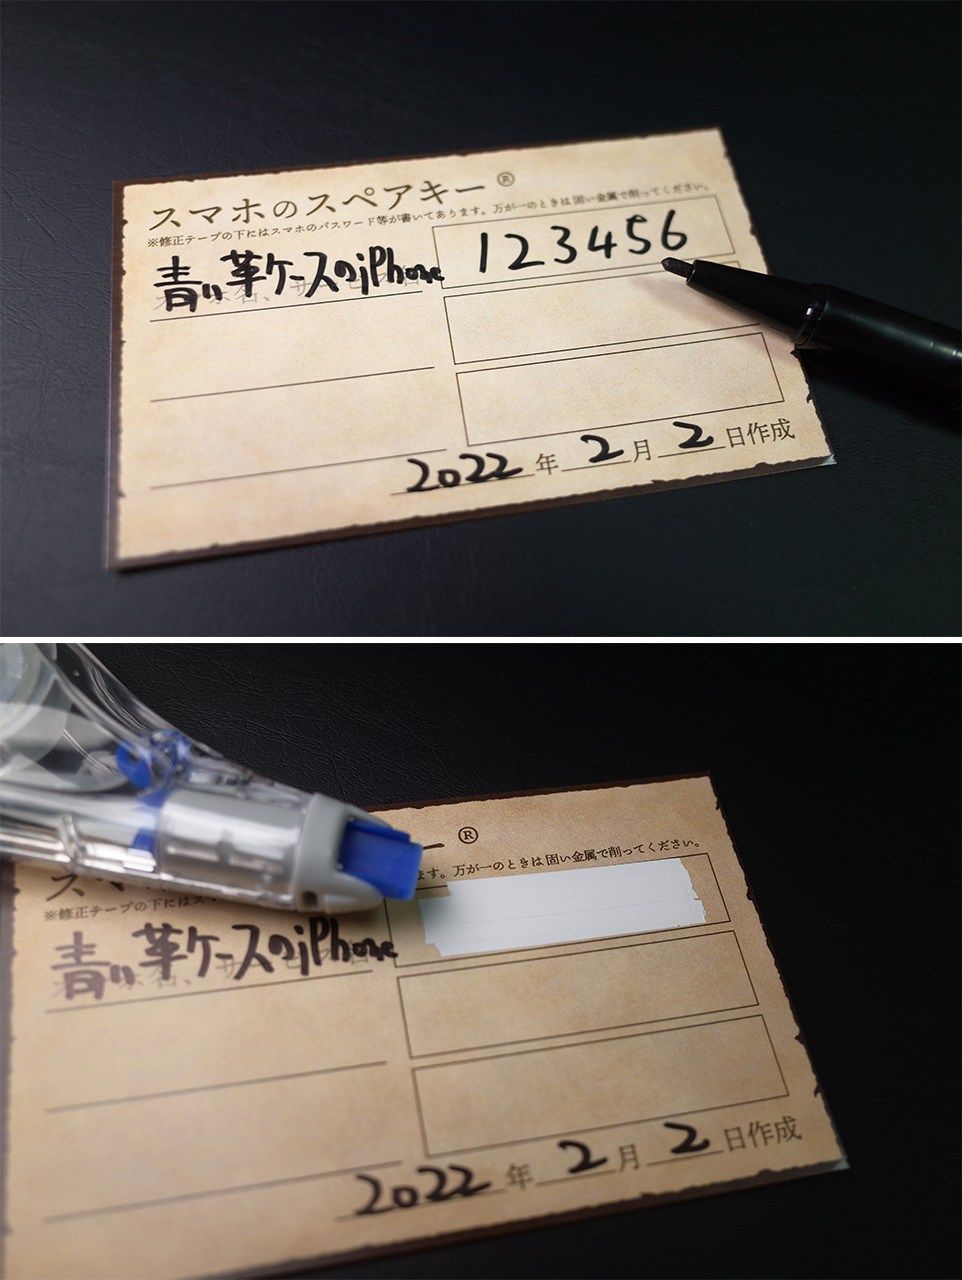 マジックやボールペンでスマホの特徴とパスワードを記入する。修正テープを3回ほど重ねることで透けないようにする。その後に照明にかざして、文字が透けるかチェックする。コインなどでテープ部分を削ったときに紙自体が削れないように、厚紙は光沢紙を使うのが望ましい。